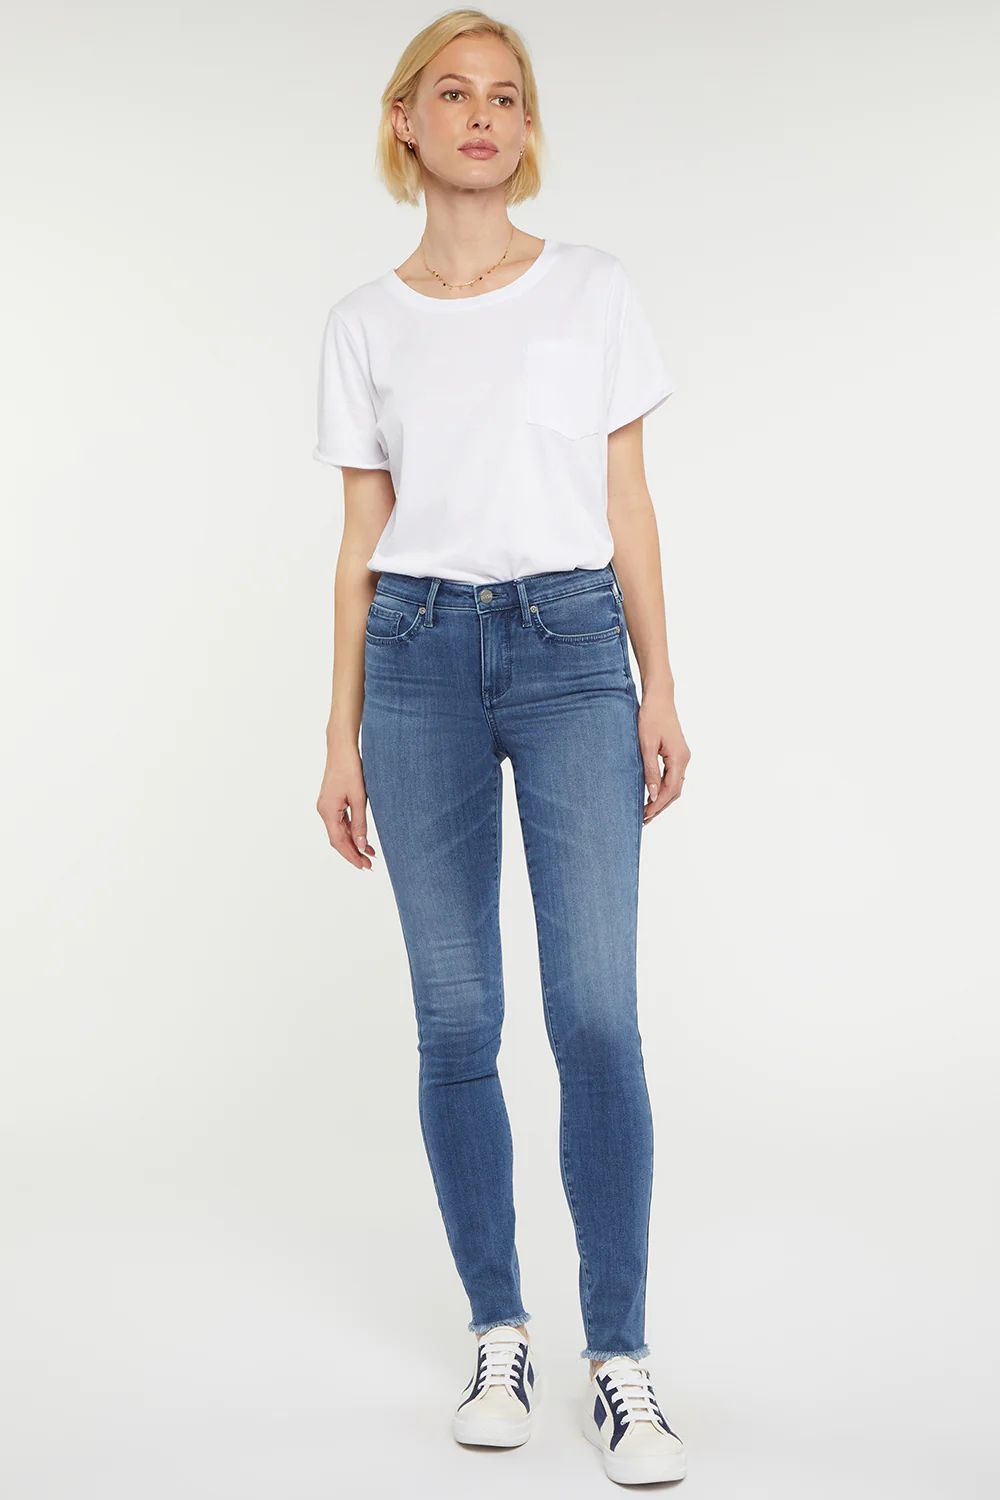 Ami Skinny Jeans - Slopeside | NYDJ